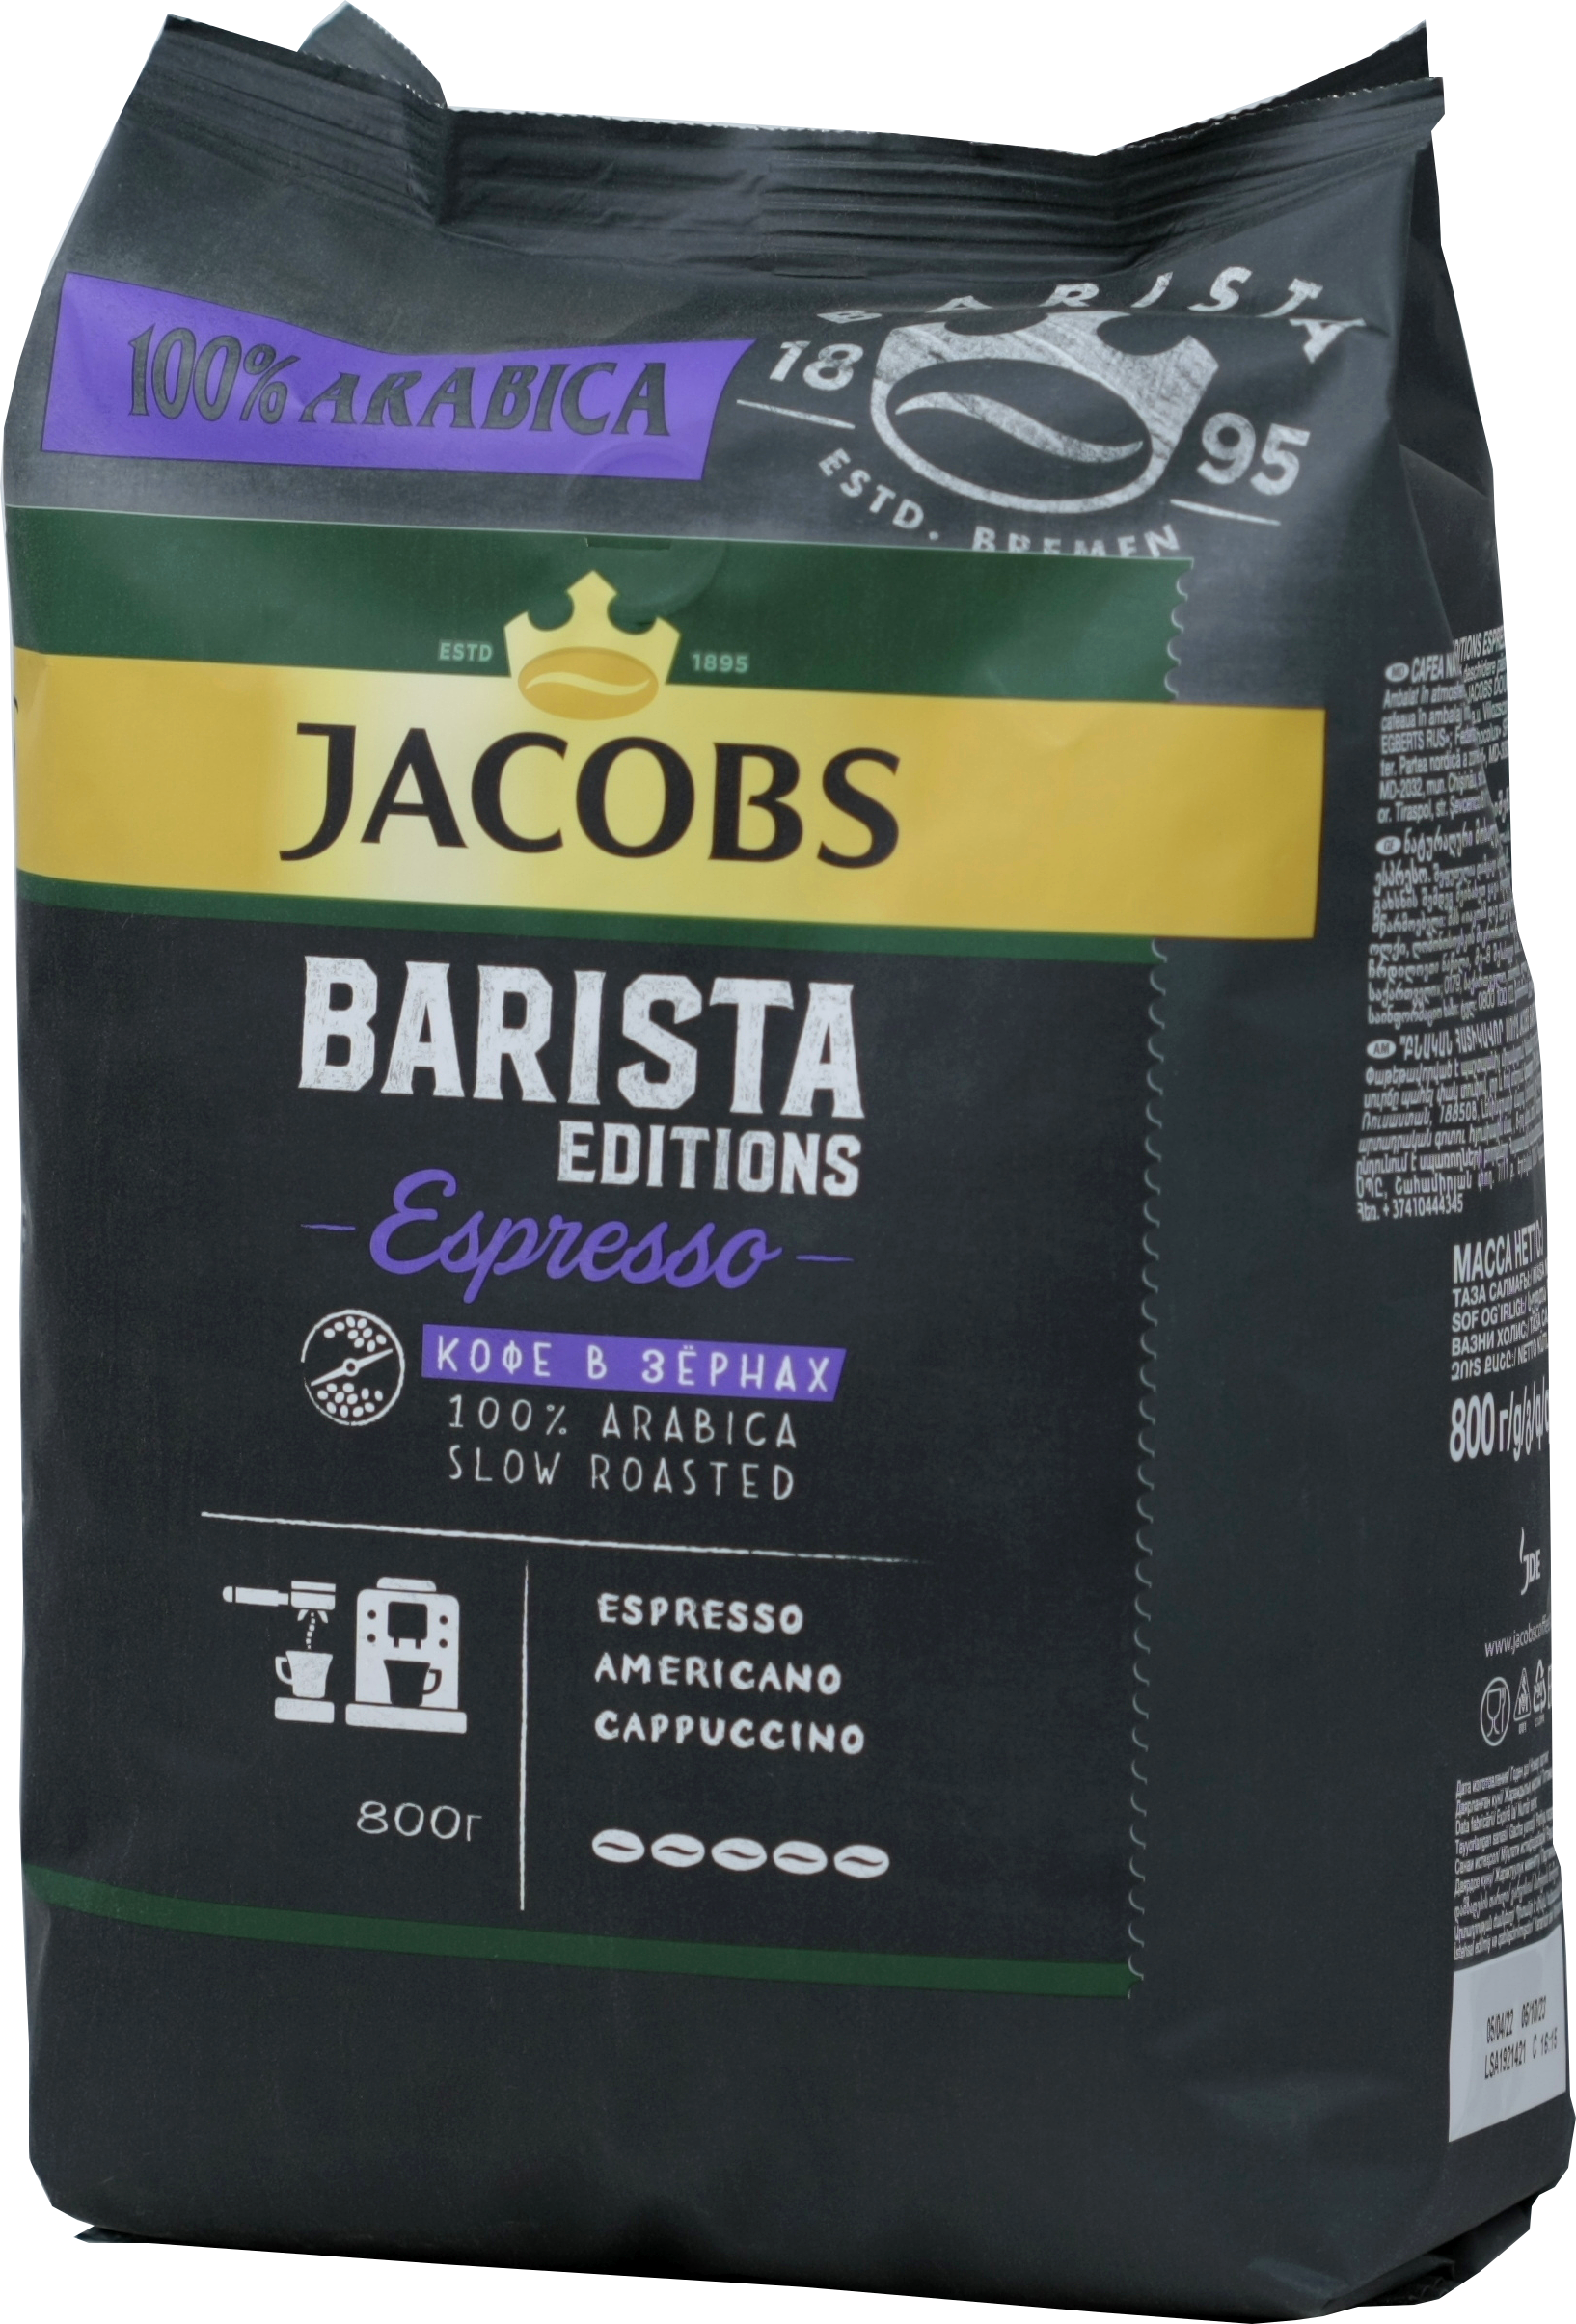 Jacobs. Barista Editions Espresso ОПТ гр. 800 Чай&Кофе упаковка (зерновой) мягкая 